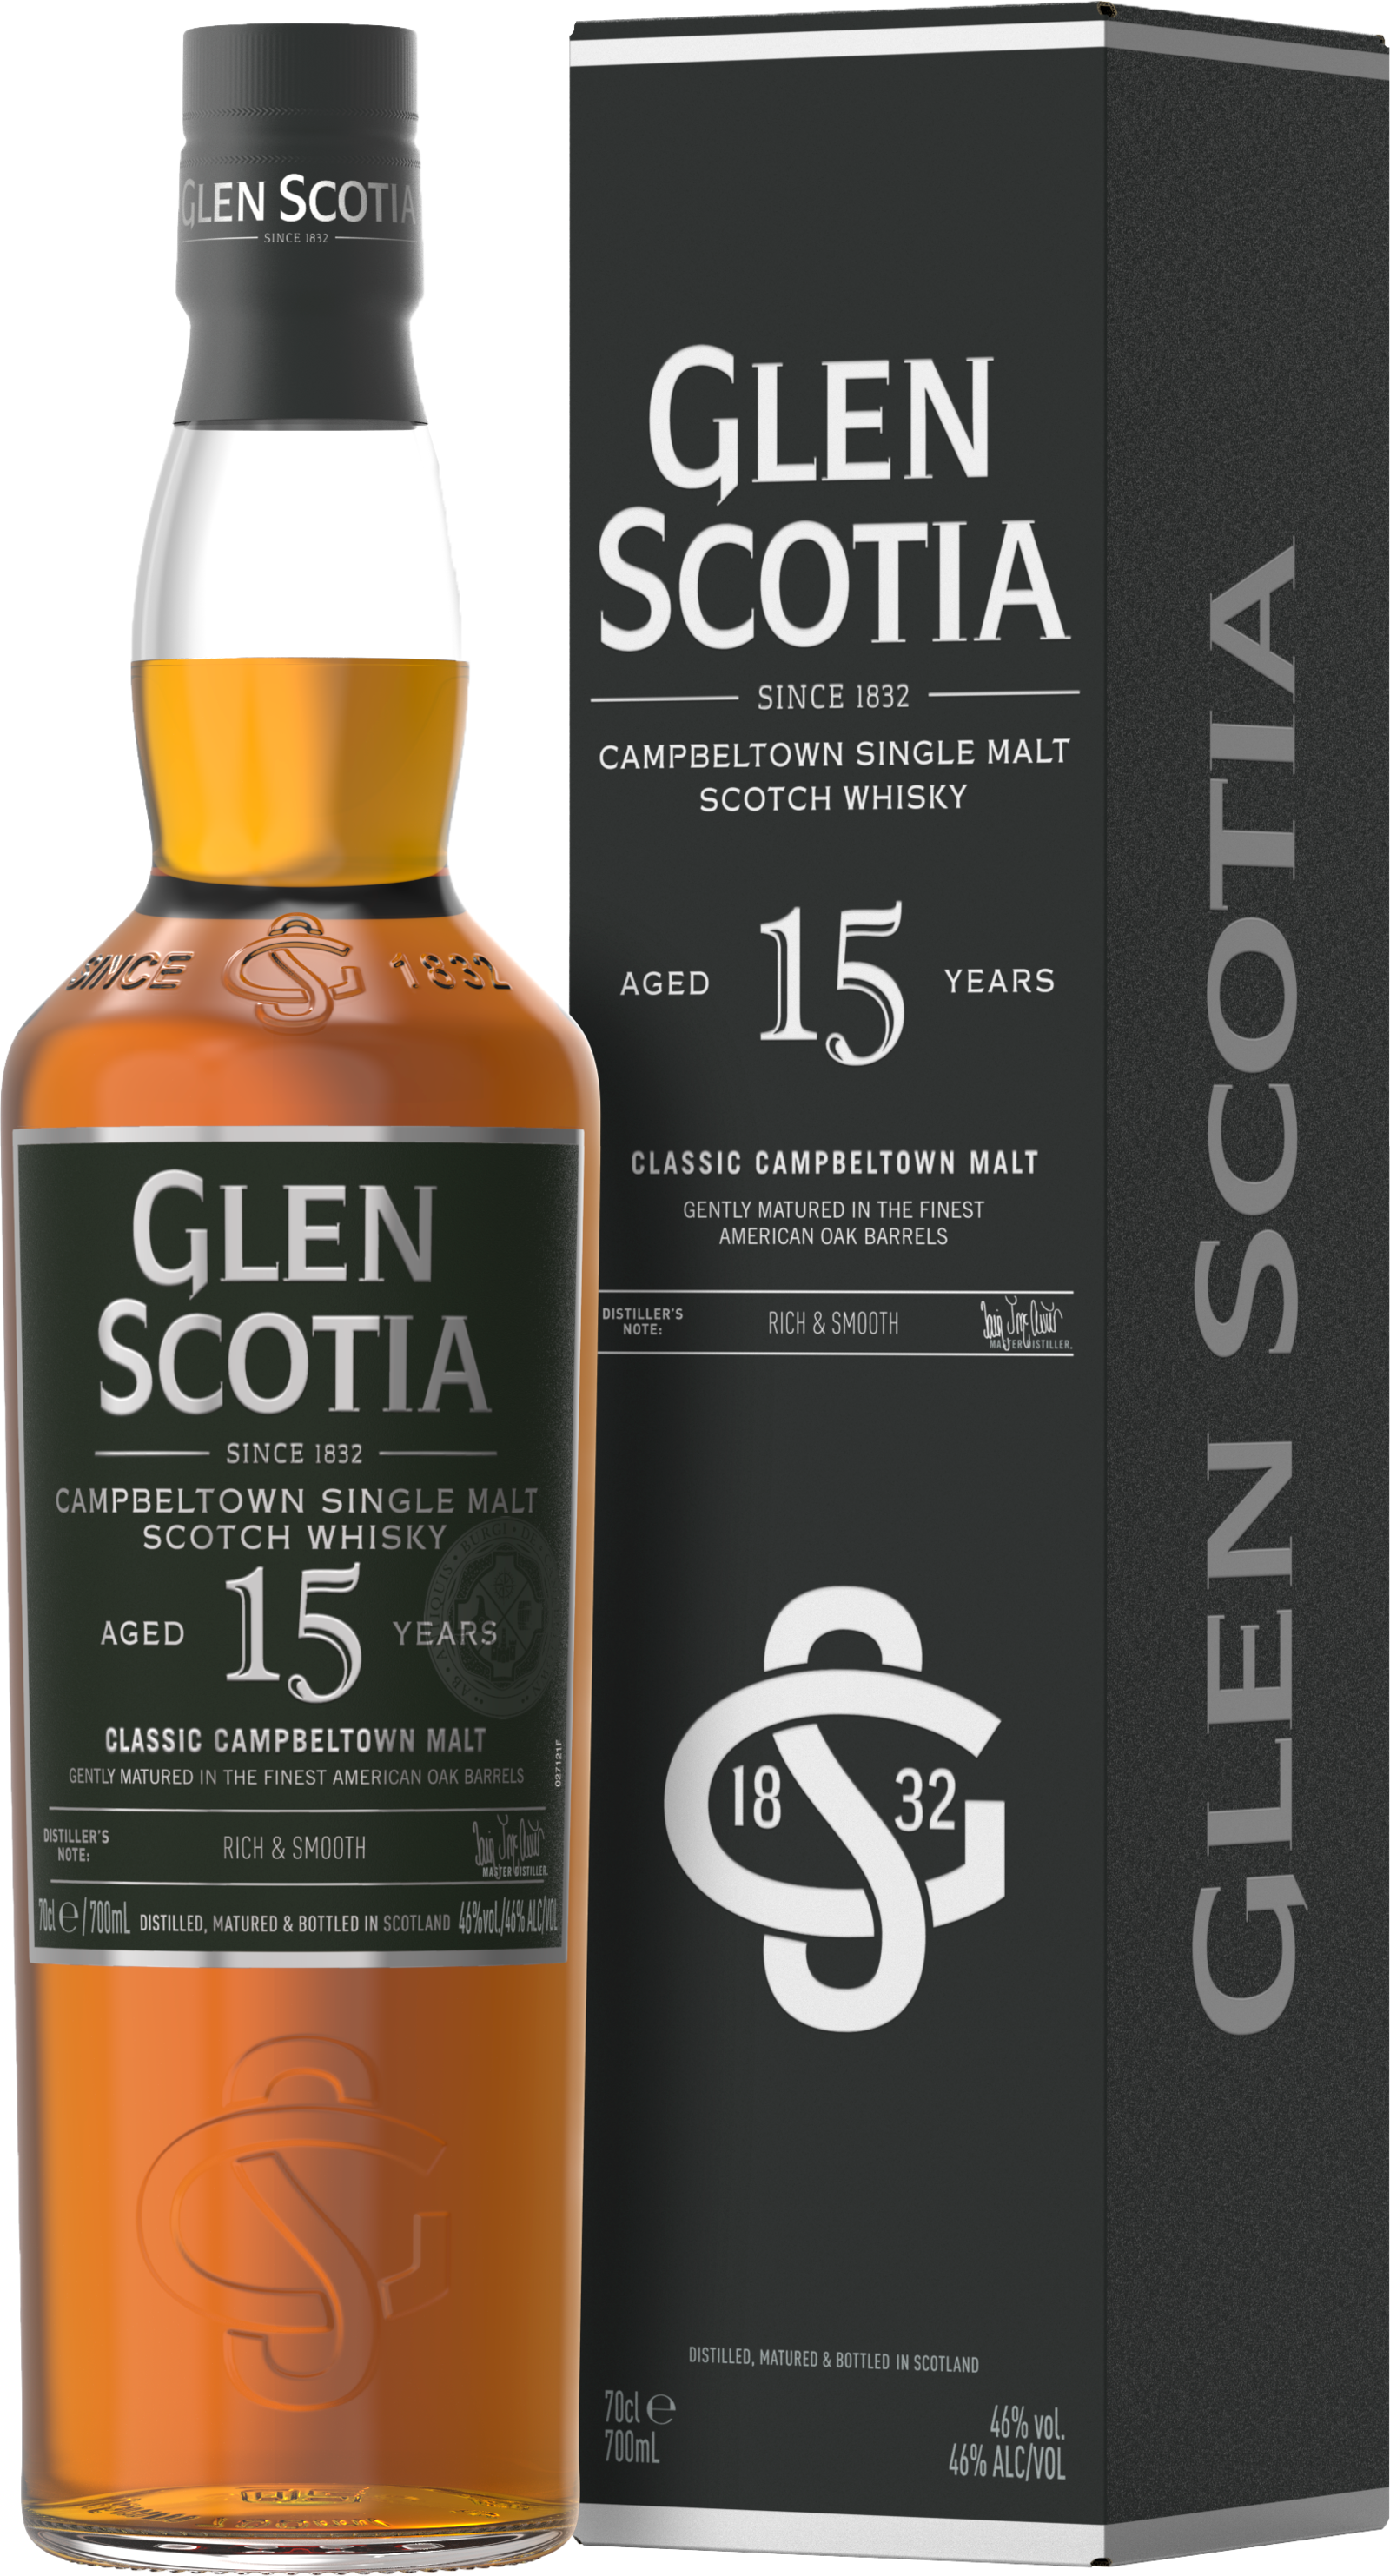 Glen Scotia 15 Jahre